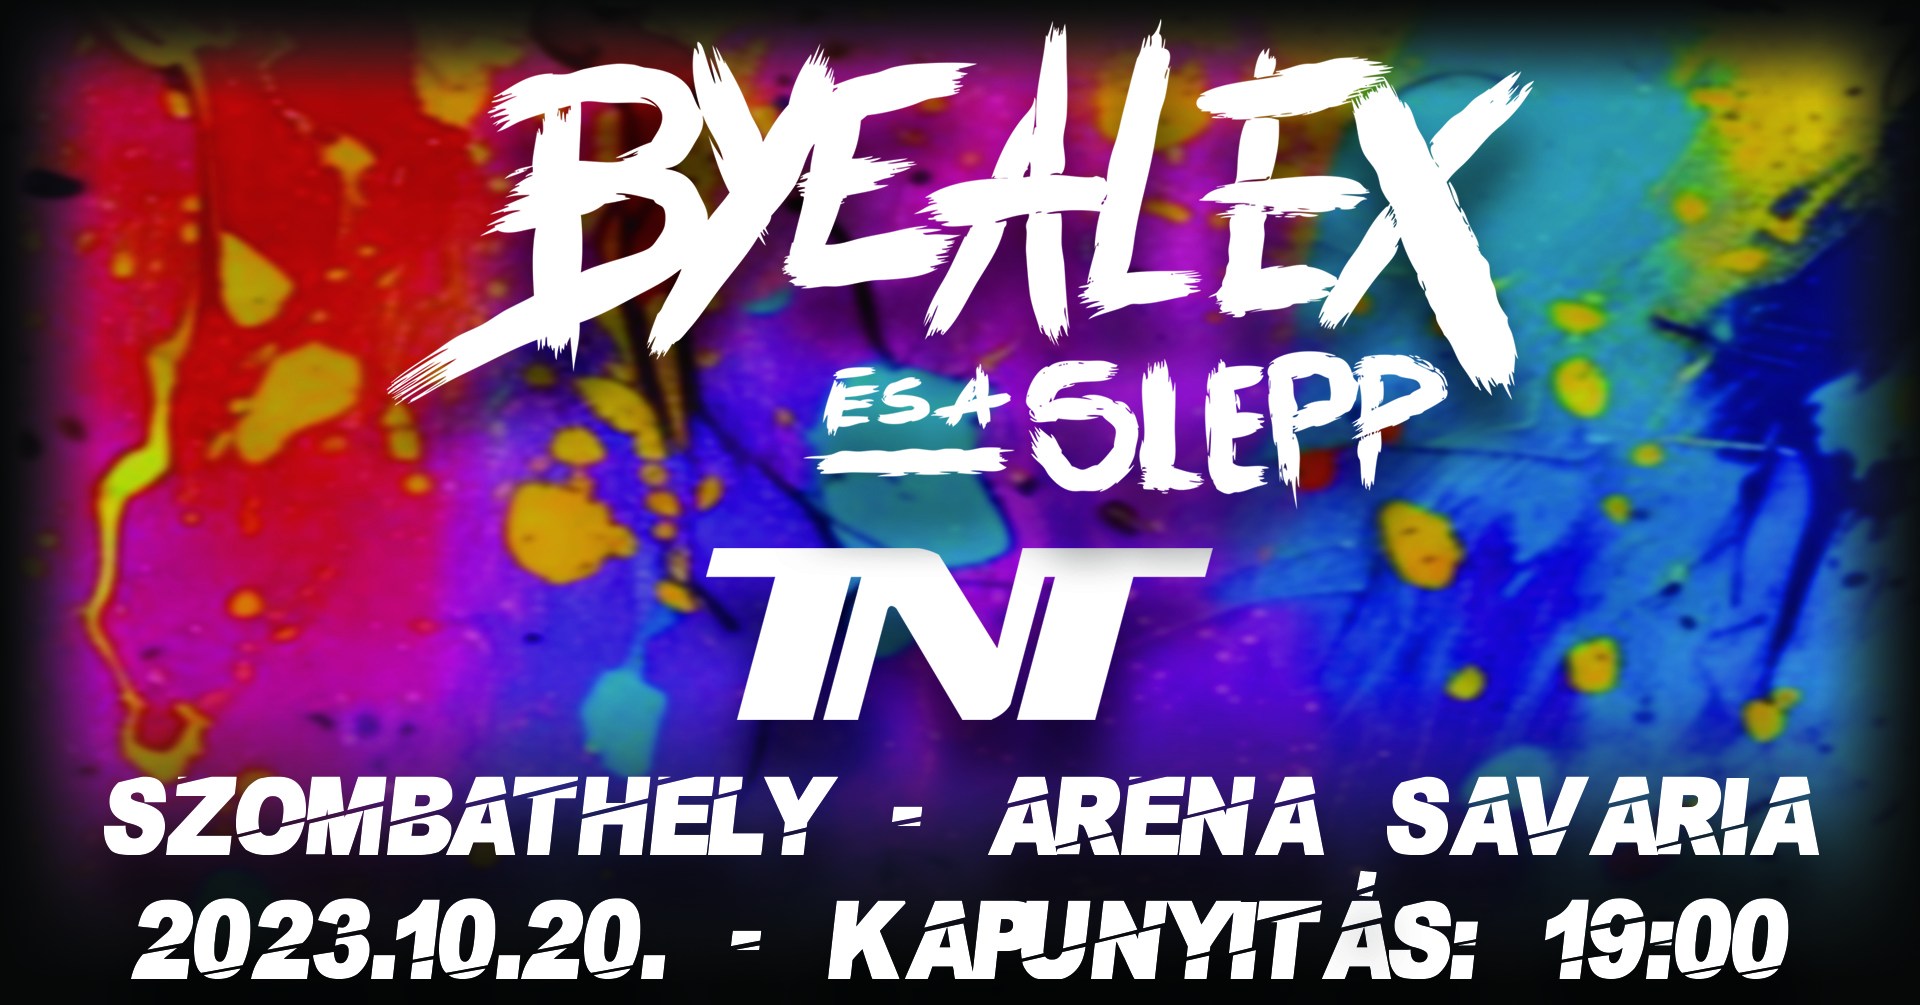 ByeAlex és a Slepp & TNT - 2023.10.23 20 óra Arena Savaria, Szombathely